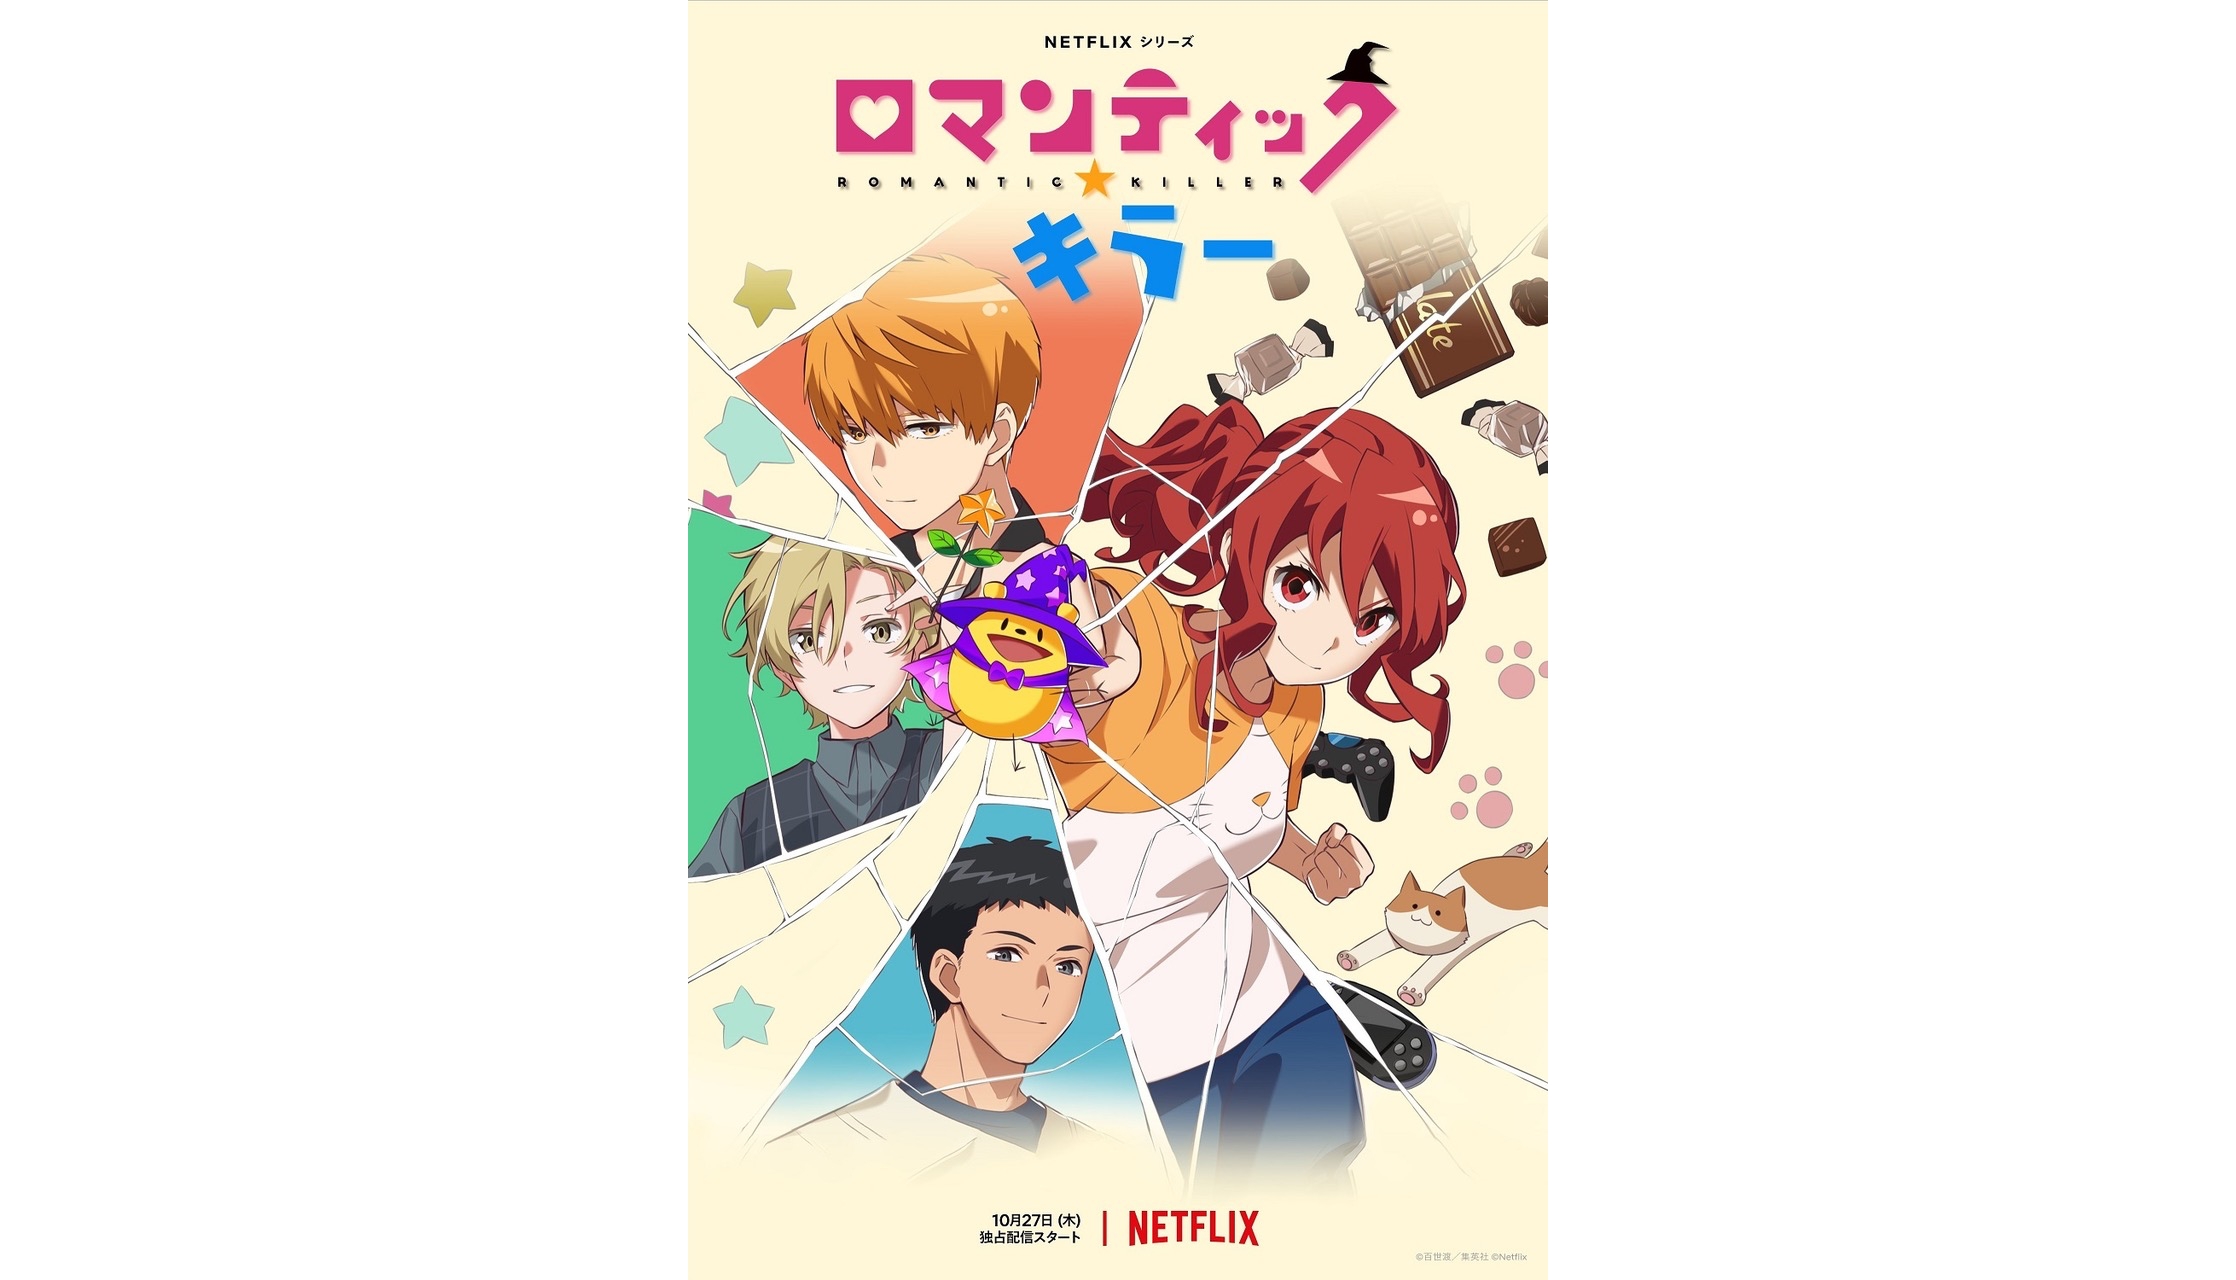 Netflix Anime Series Romantic Killer Unveils Special Clip